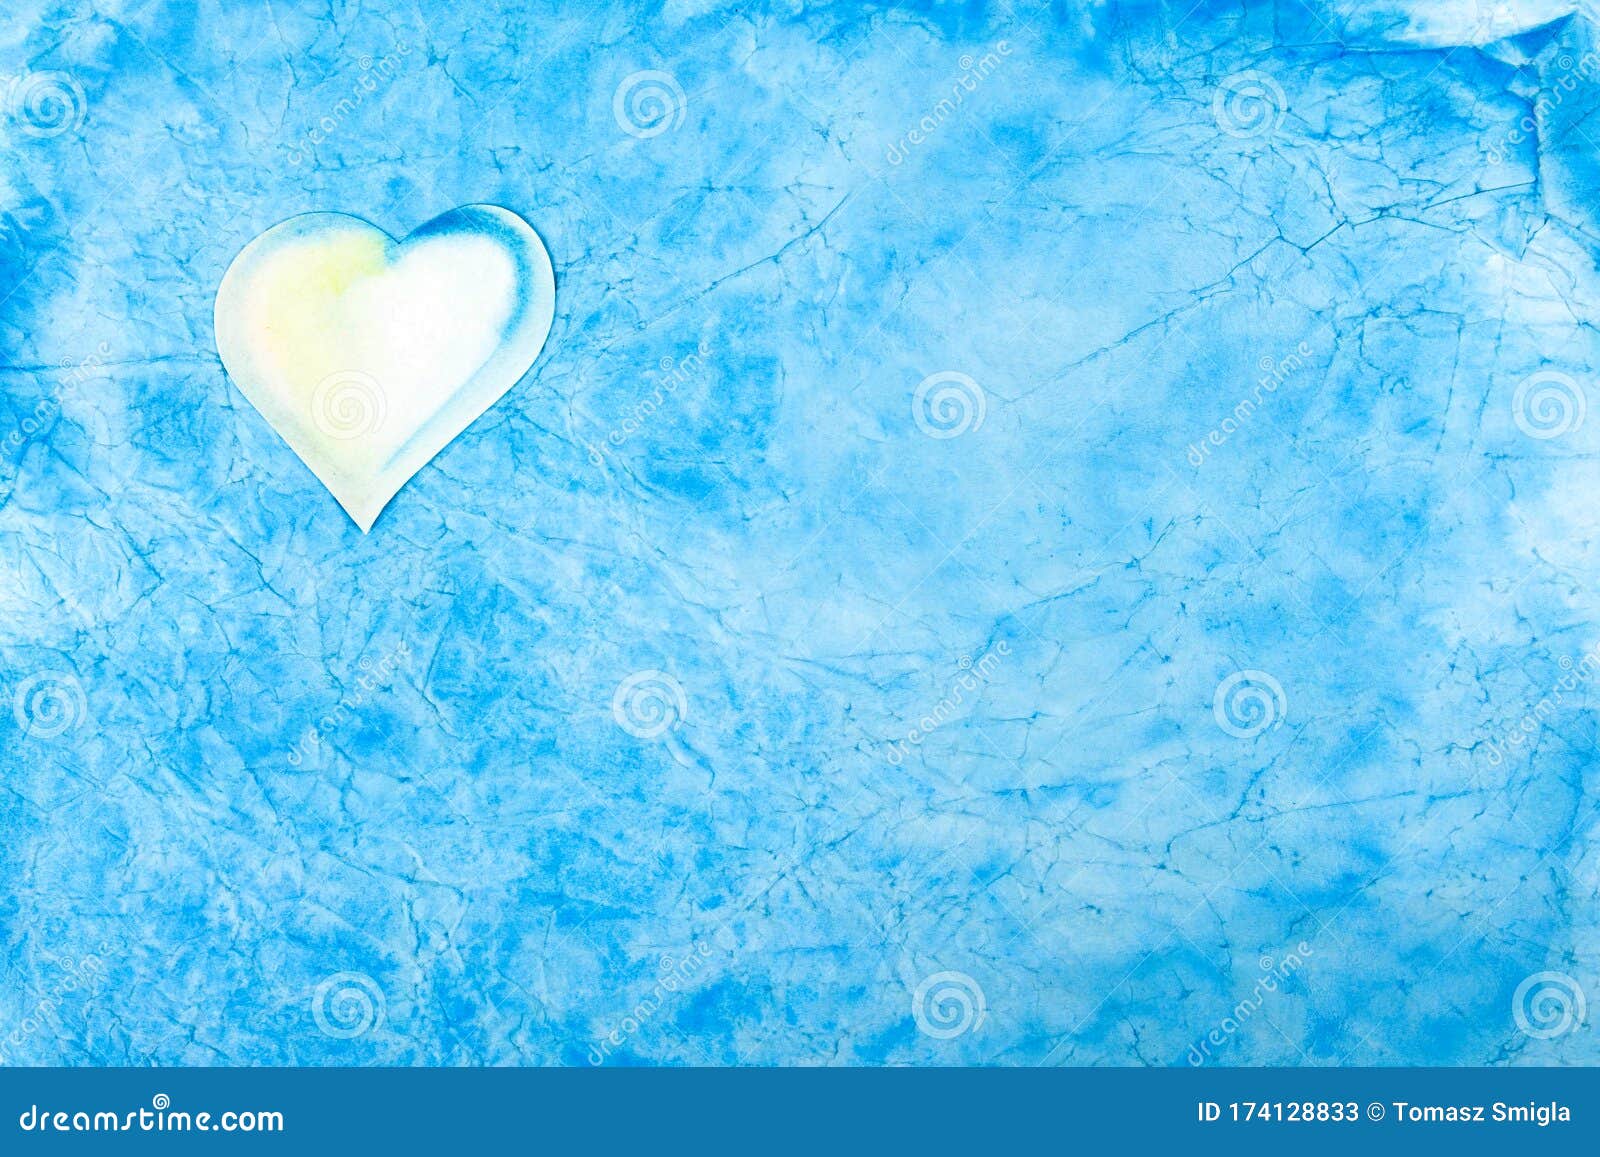 浅蓝色抽象云 如背景纹理 角落有小白心平静的壁纸 问候库存图片 图片包括有平静的壁纸 问候 浅蓝色抽象云 如背景纹理 角落有小白心